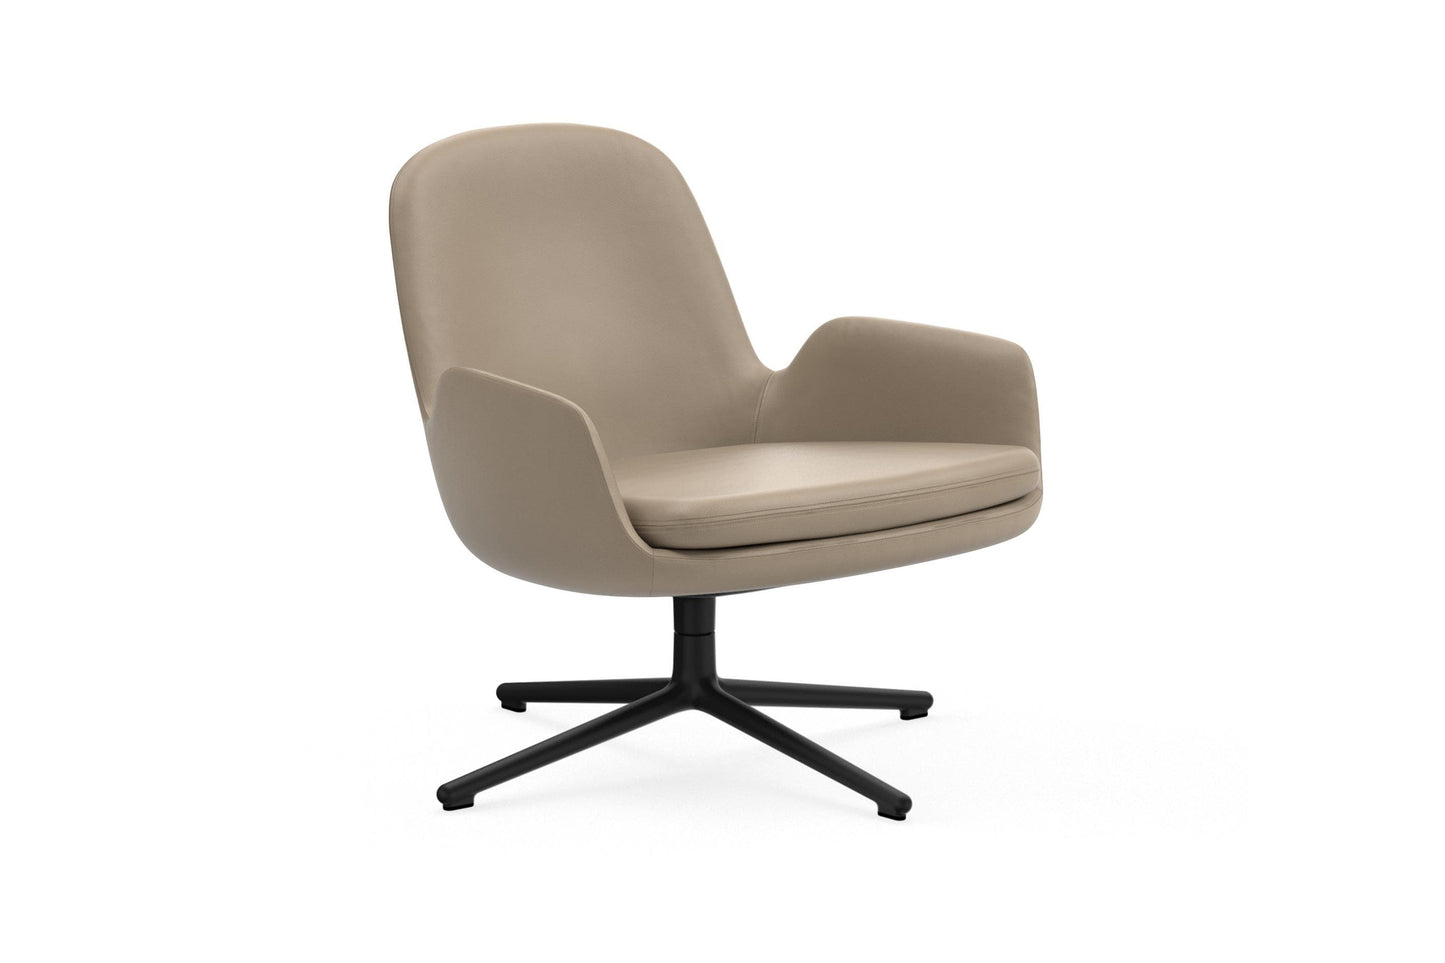 Era Lounge Chair Low, Black Swivel by Normann Copenhagen